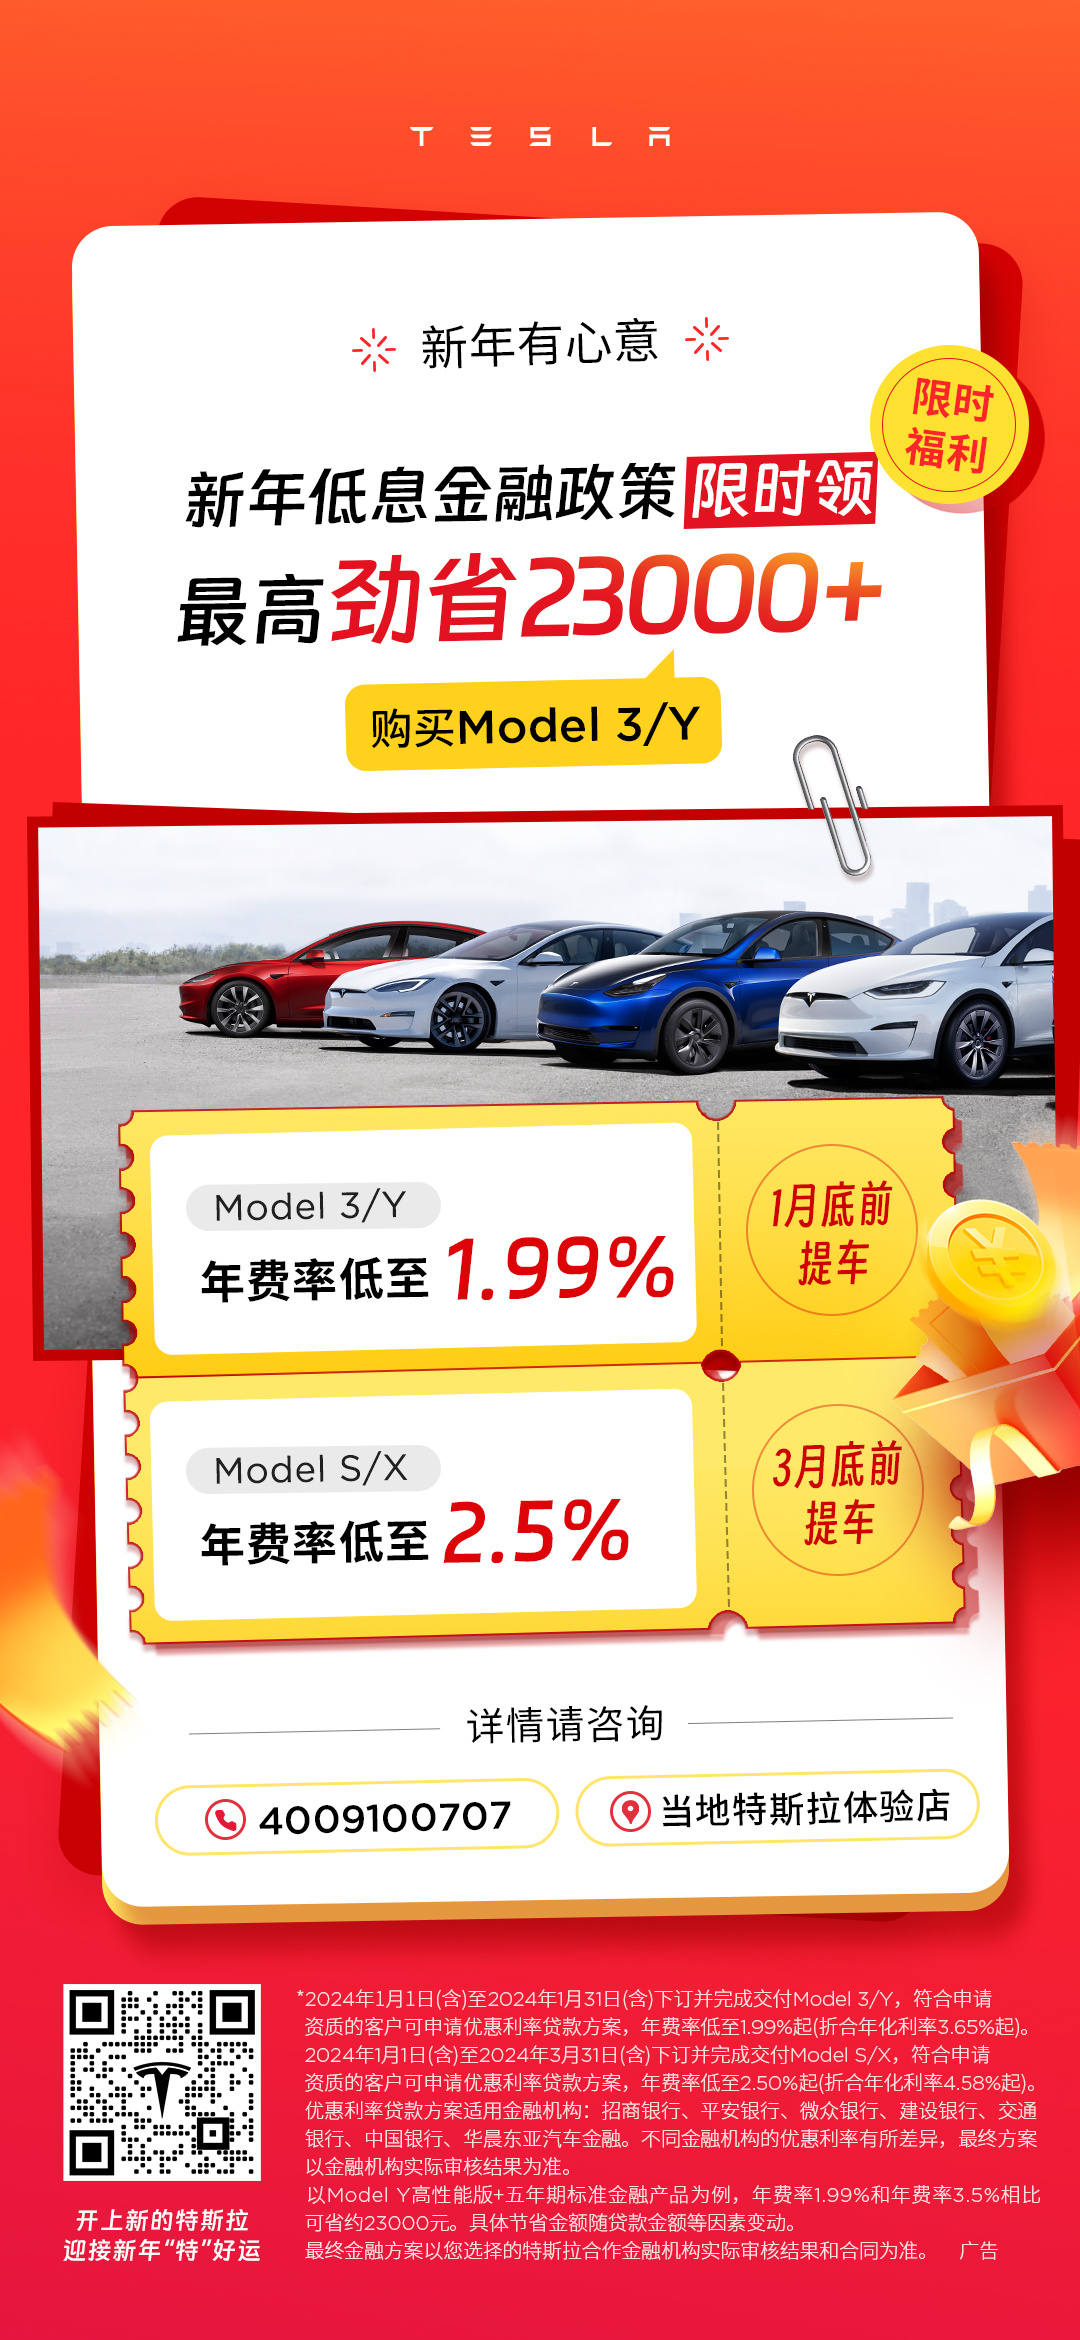 model-sx-ny-incentive-china